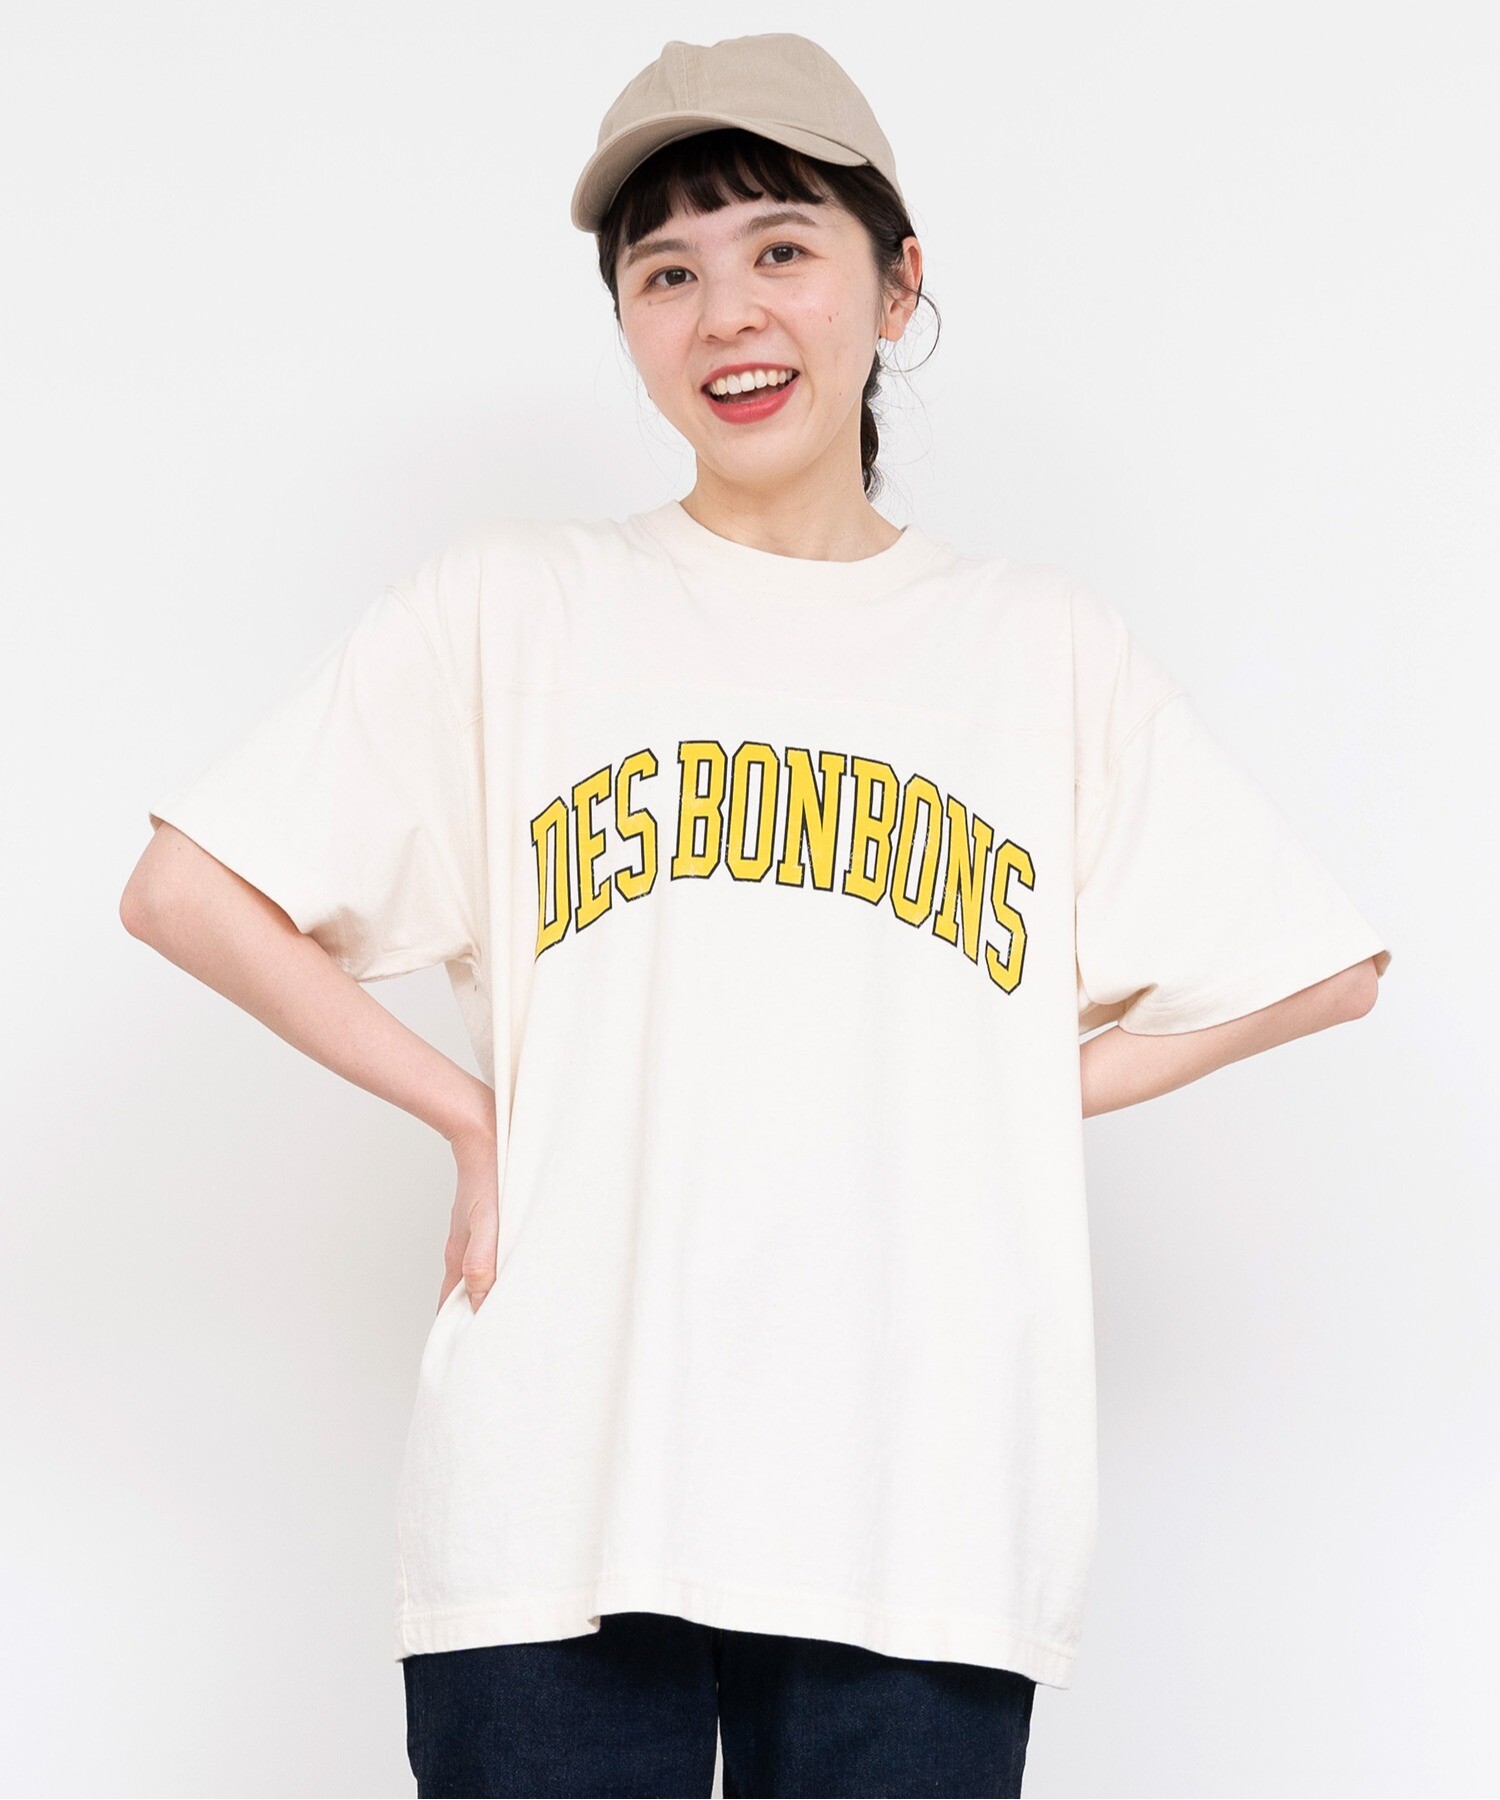 AMBIDEX Store ○〇オーガニックリサイクル天竺ロゴTシャツ(F オレンジ 